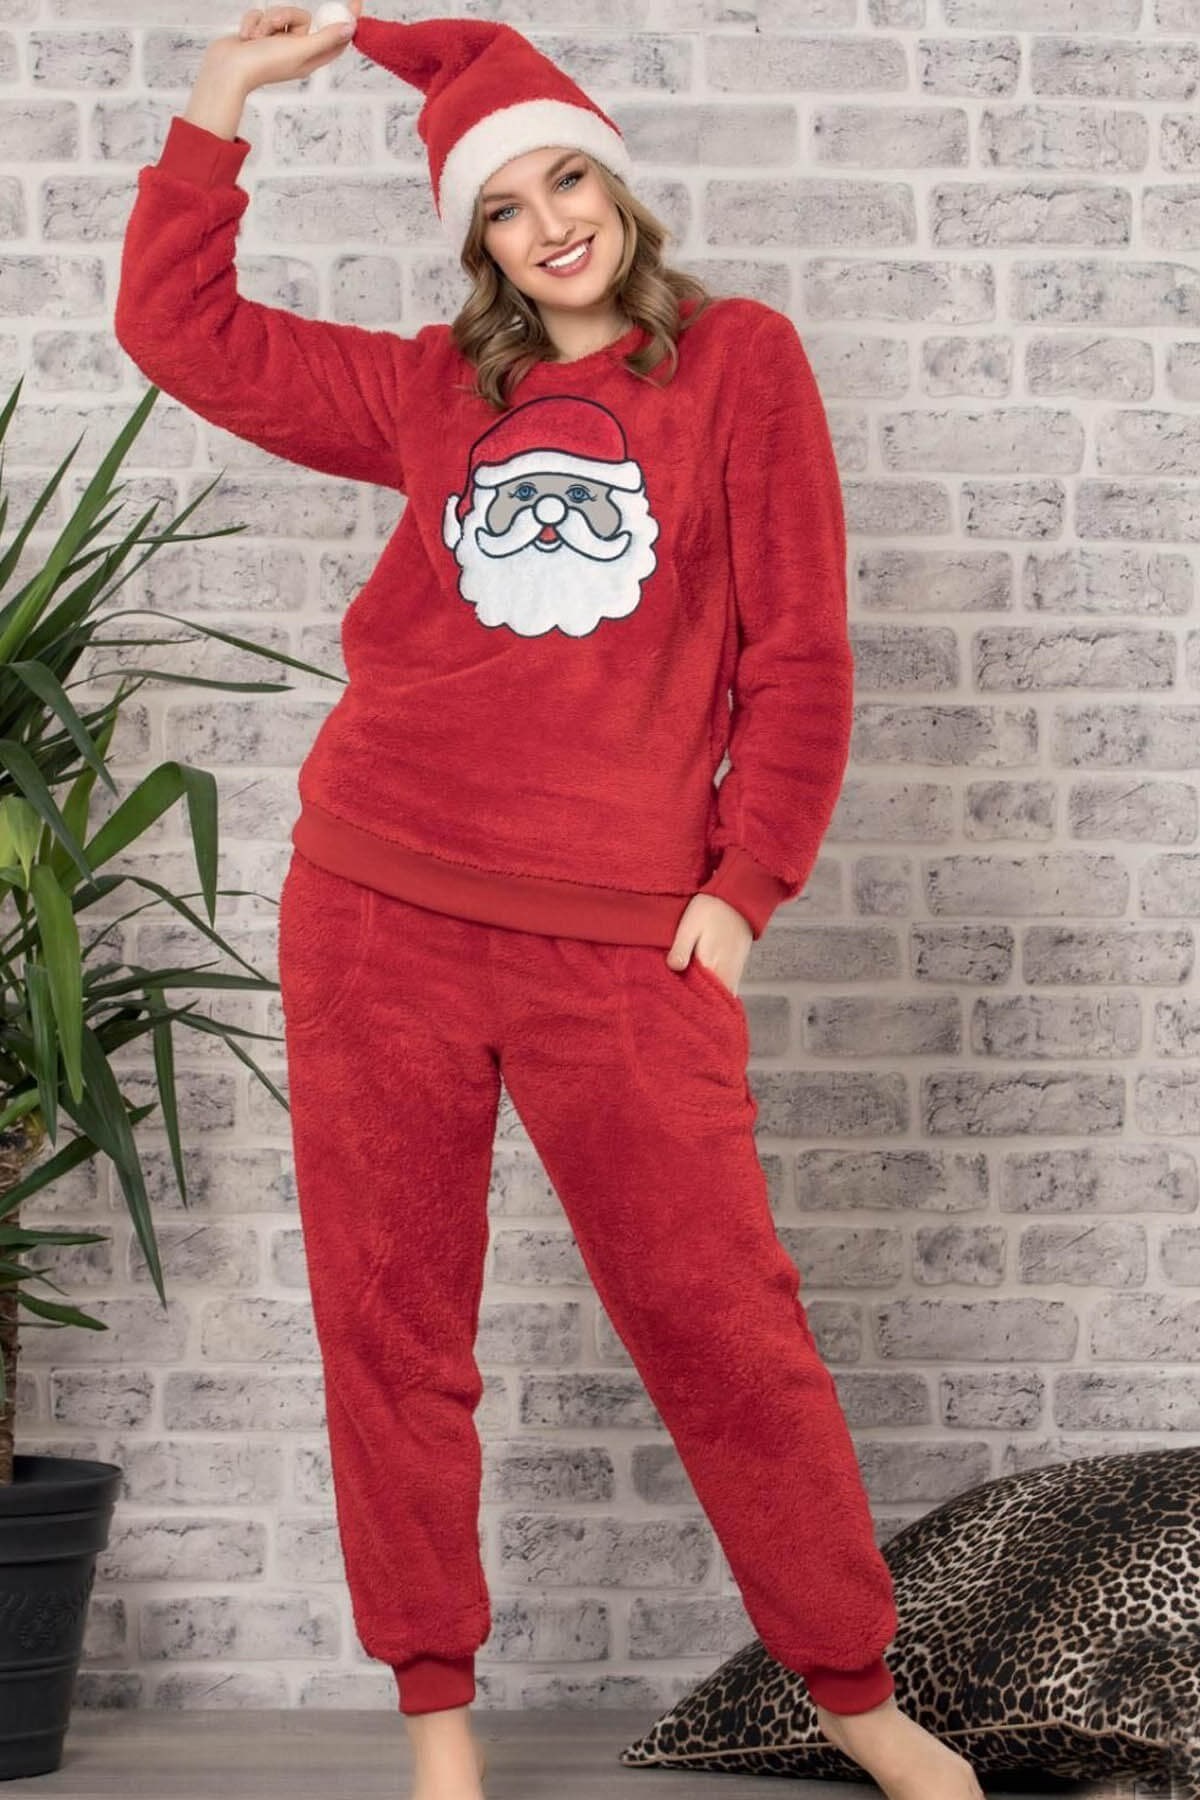 Arcan 2602 Kırmızı Şapkalı Yılbaşı Temalı Polar Pijama Takımı KIRMIZI